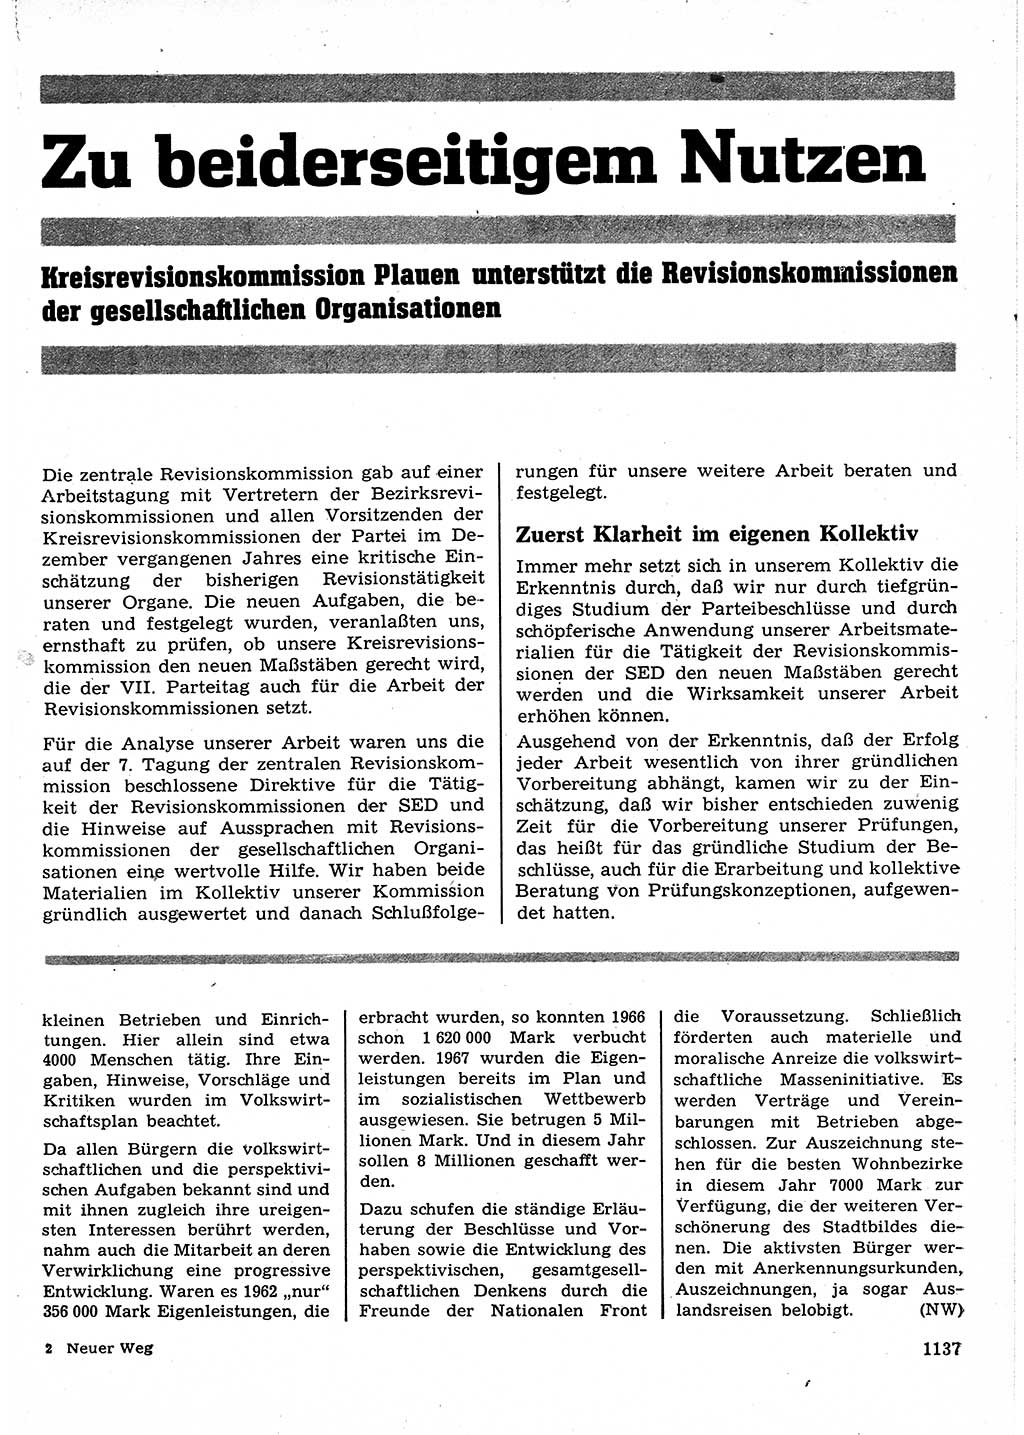 Neuer Weg (NW), Organ des Zentralkomitees (ZK) der SED (Sozialistische Einheitspartei Deutschlands) für Fragen des Parteilebens, 23. Jahrgang [Deutsche Demokratische Republik (DDR)] 1968, Seite 1121 (NW ZK SED DDR 1968, S. 1121)